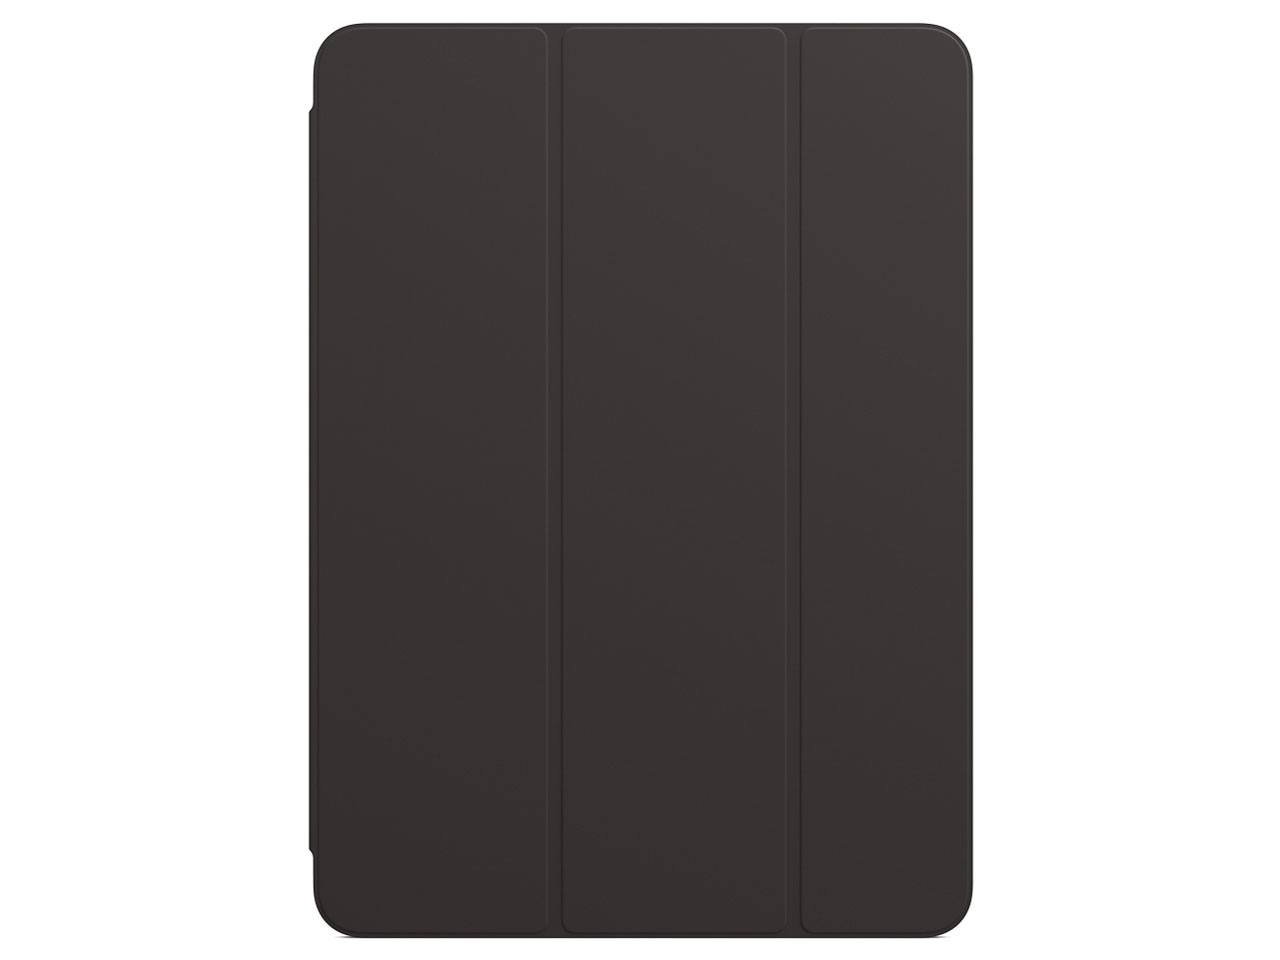 11インチiPad Pro(第2世代)用 Smart Folio MXT42FE/A [ブラック]